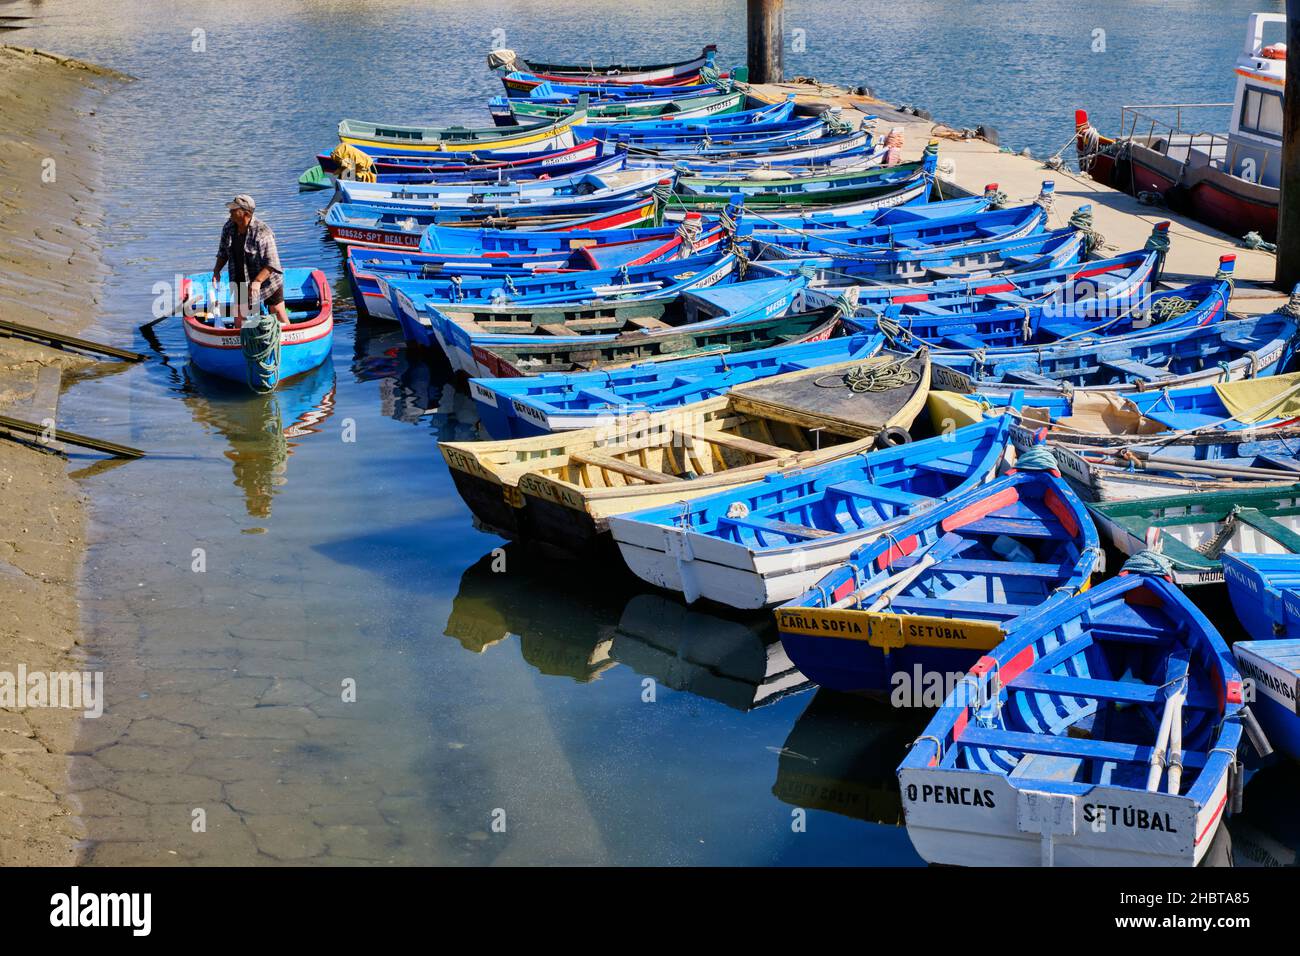 Bateaux de pêche traditionnels.Setubal, Portugal Banque D'Images